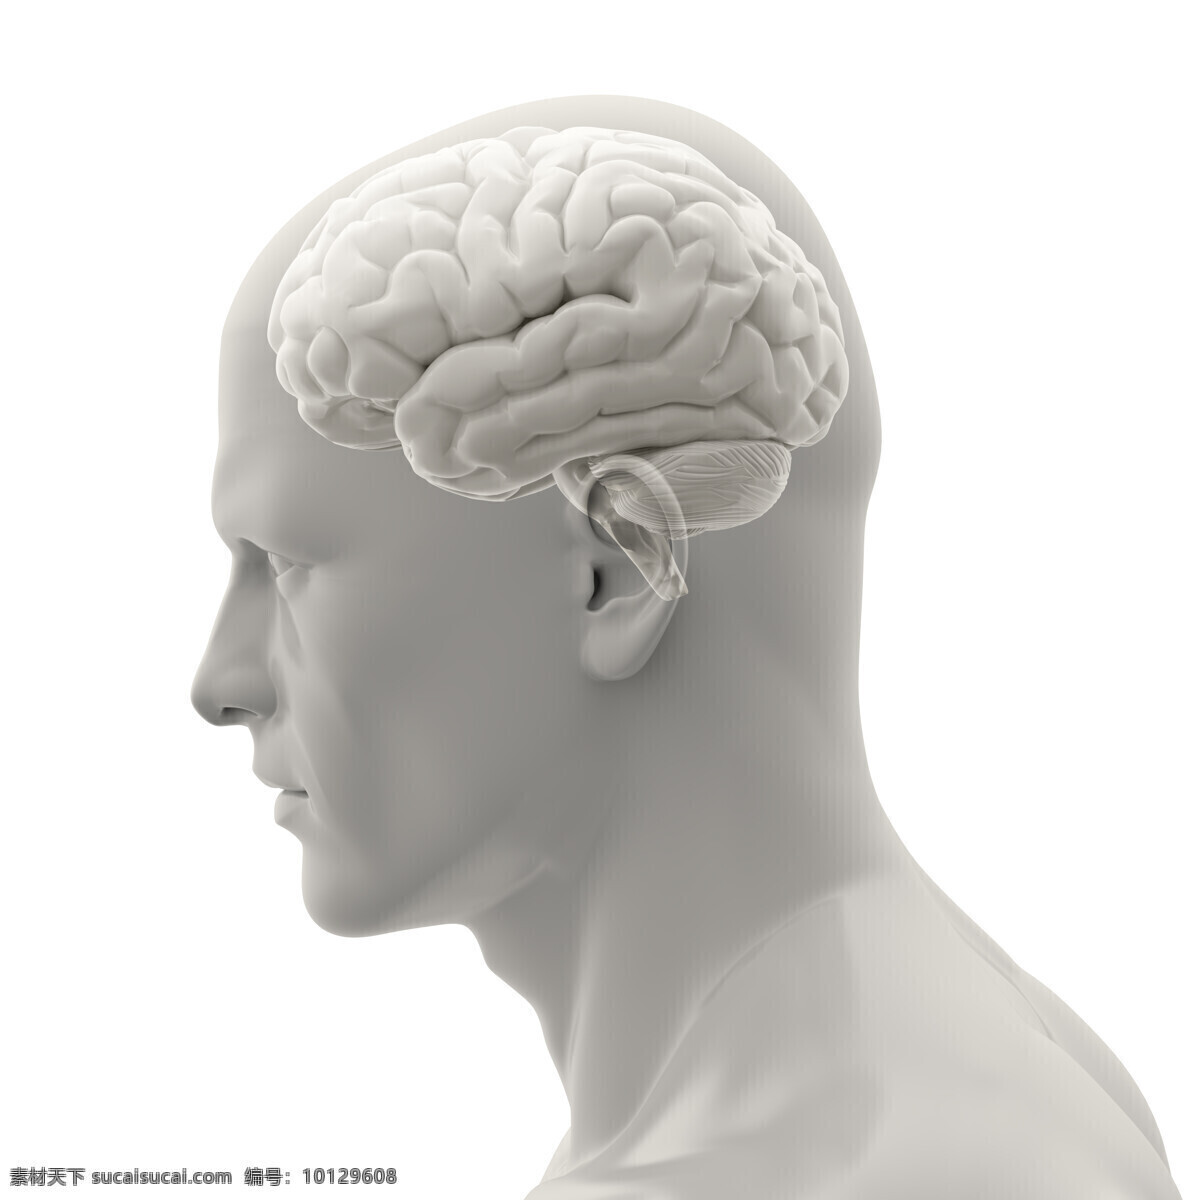 男性 大脑 模型 性大脑模型 创新思维 人体器官 人脑 人体器官图 人物图片